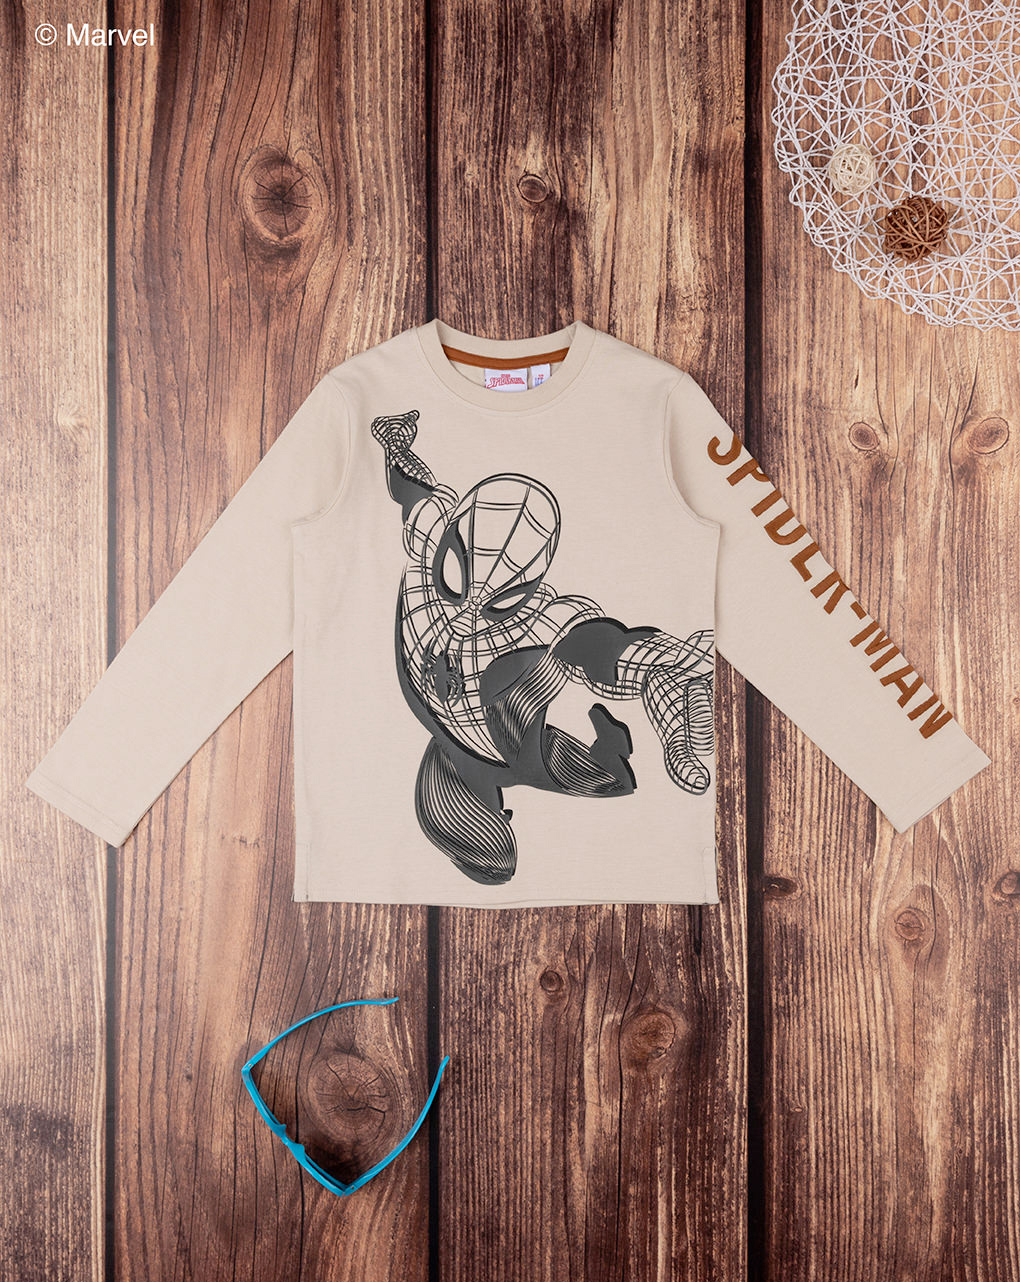 παιδική μπλούζα μπεζ με τον spiderman για αγόρι - Prénatal